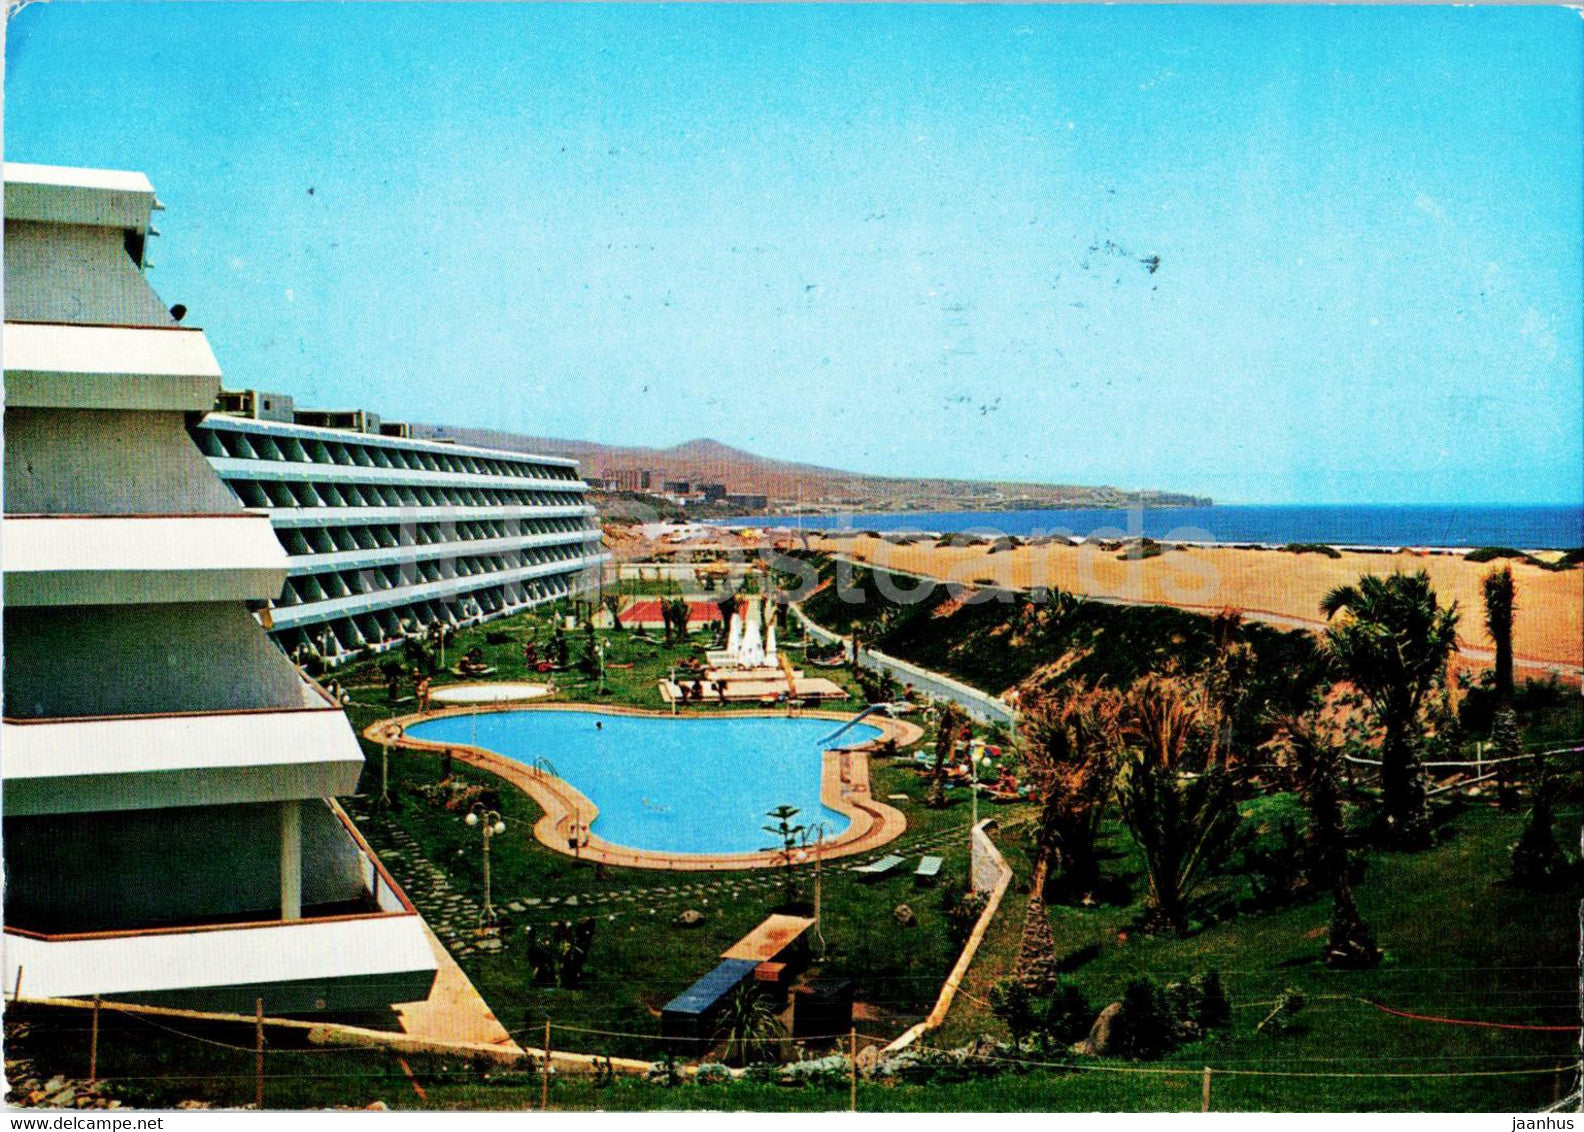 Gran Canaria - Playa del Ingles - Vista desde Santa Monica - hotel - 1974 - Spain - used - JH Postcards